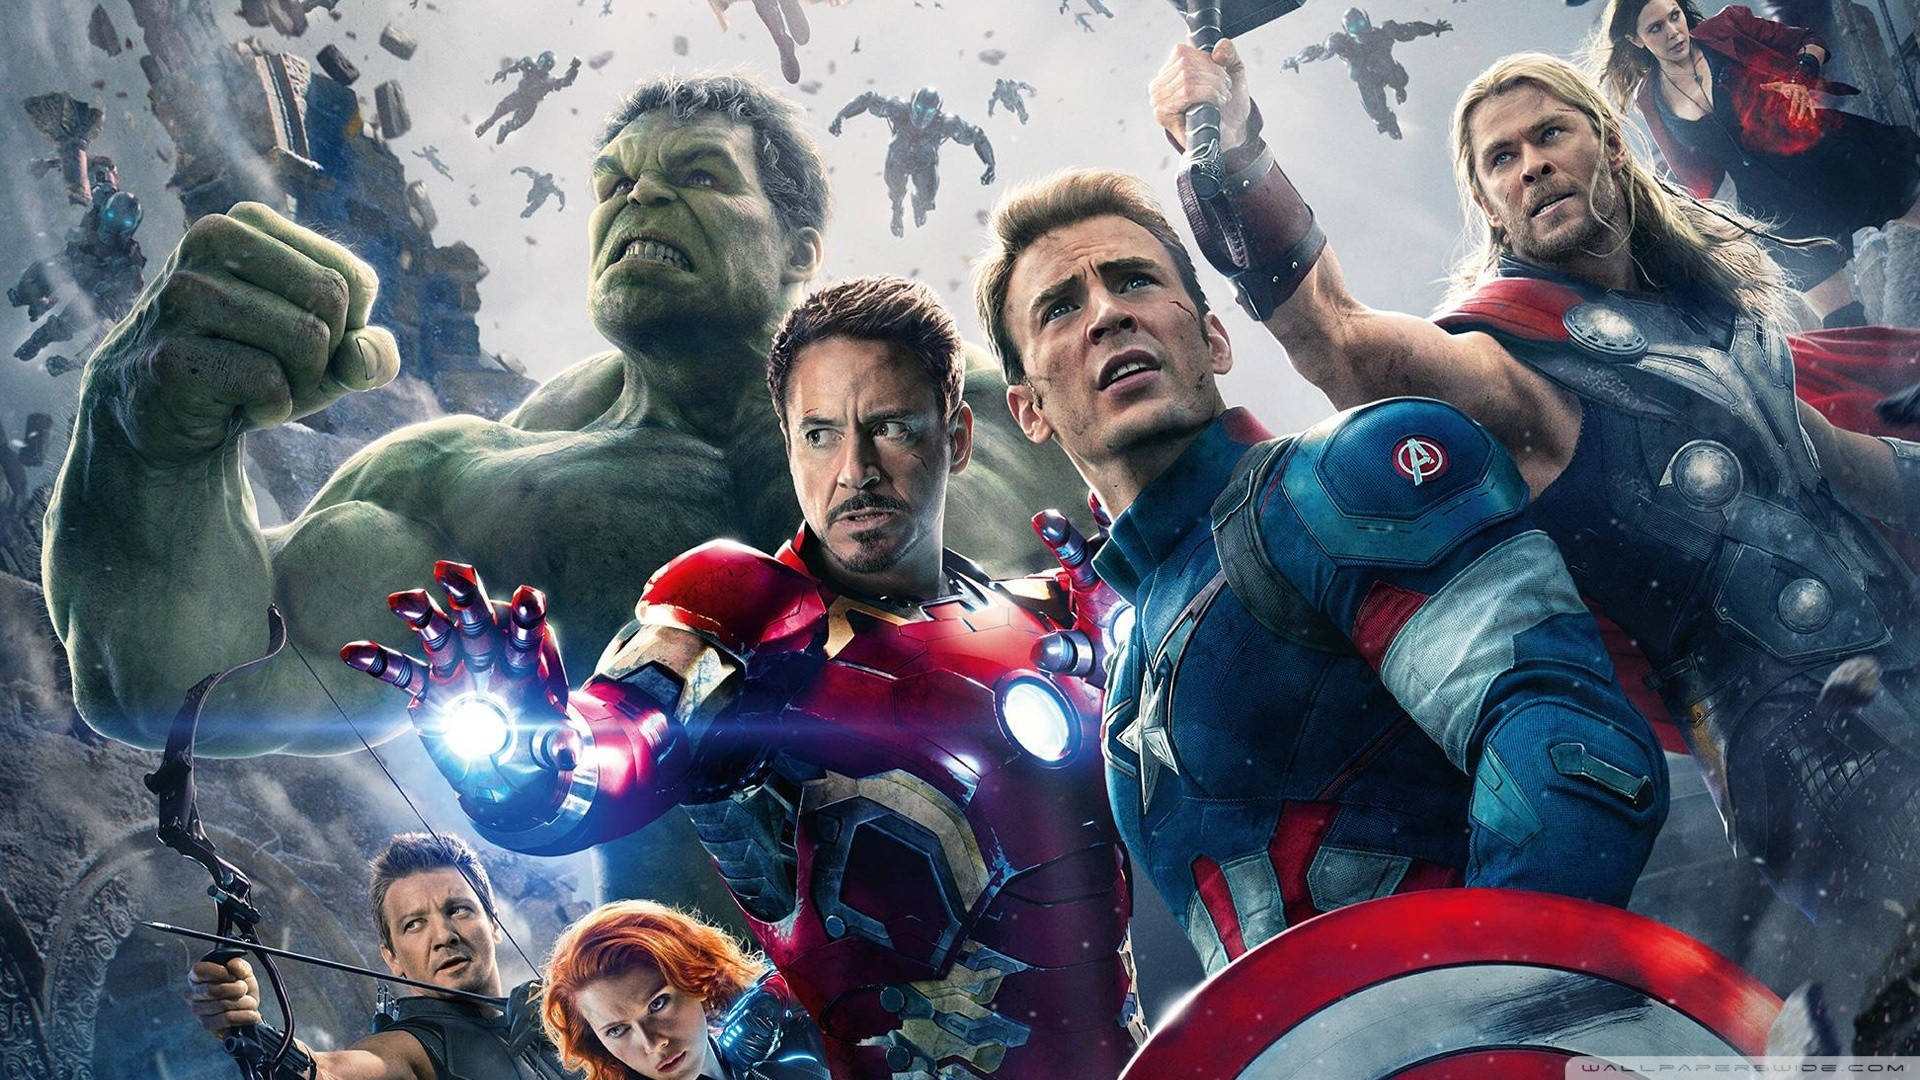 Avengerssamlades För Att Kämpa Mot Ondska. Wallpaper